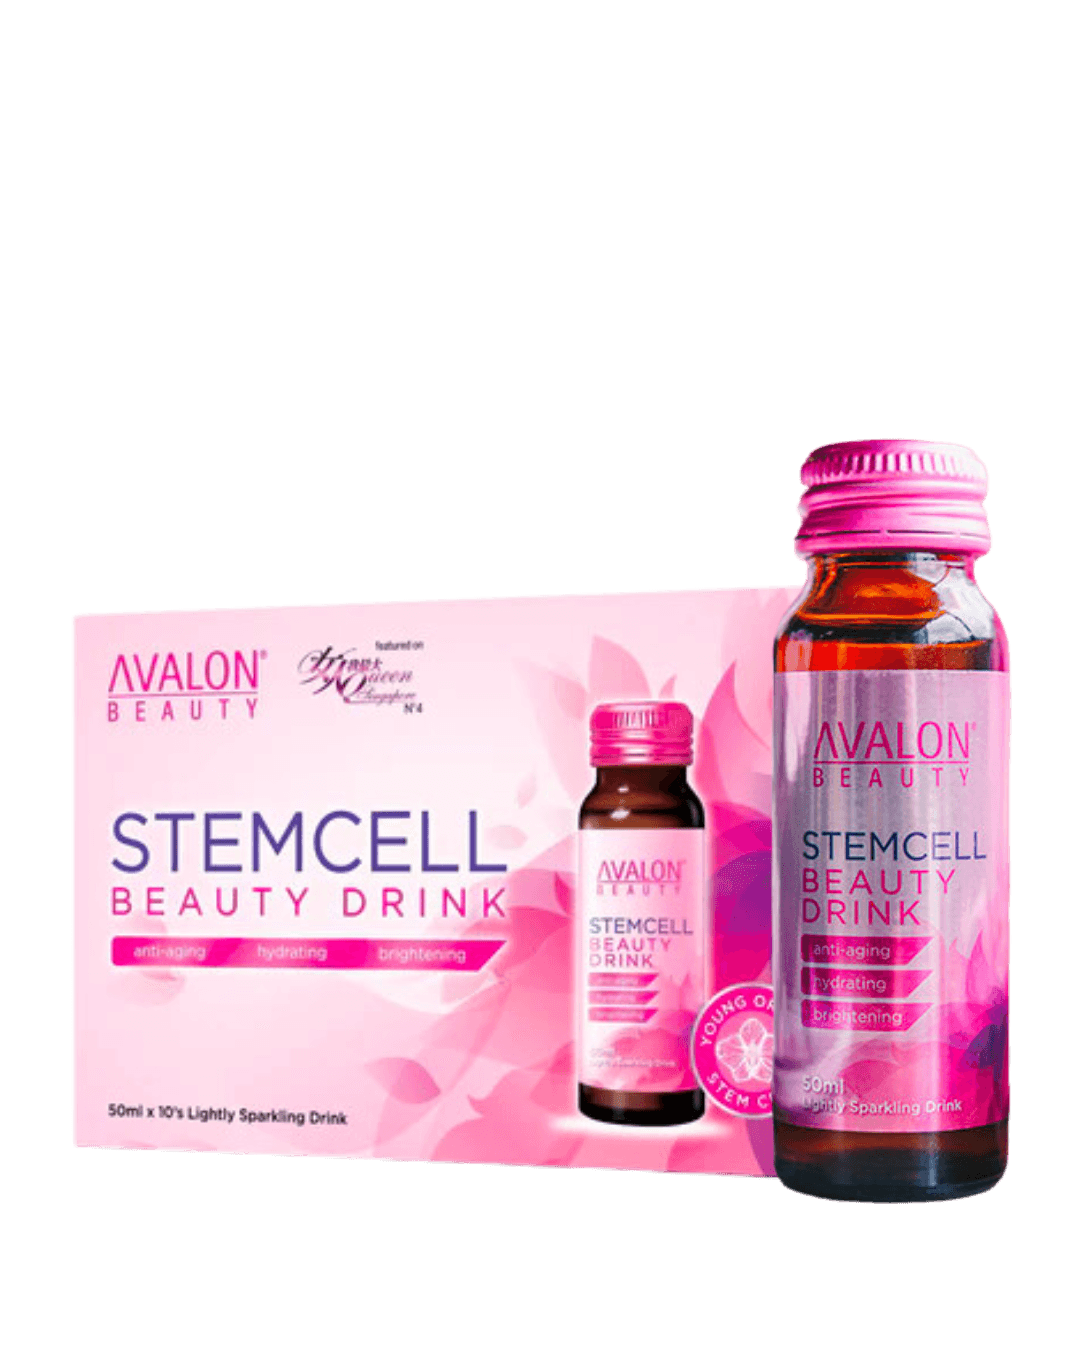 AVALON® Stemcell Beauty Drink